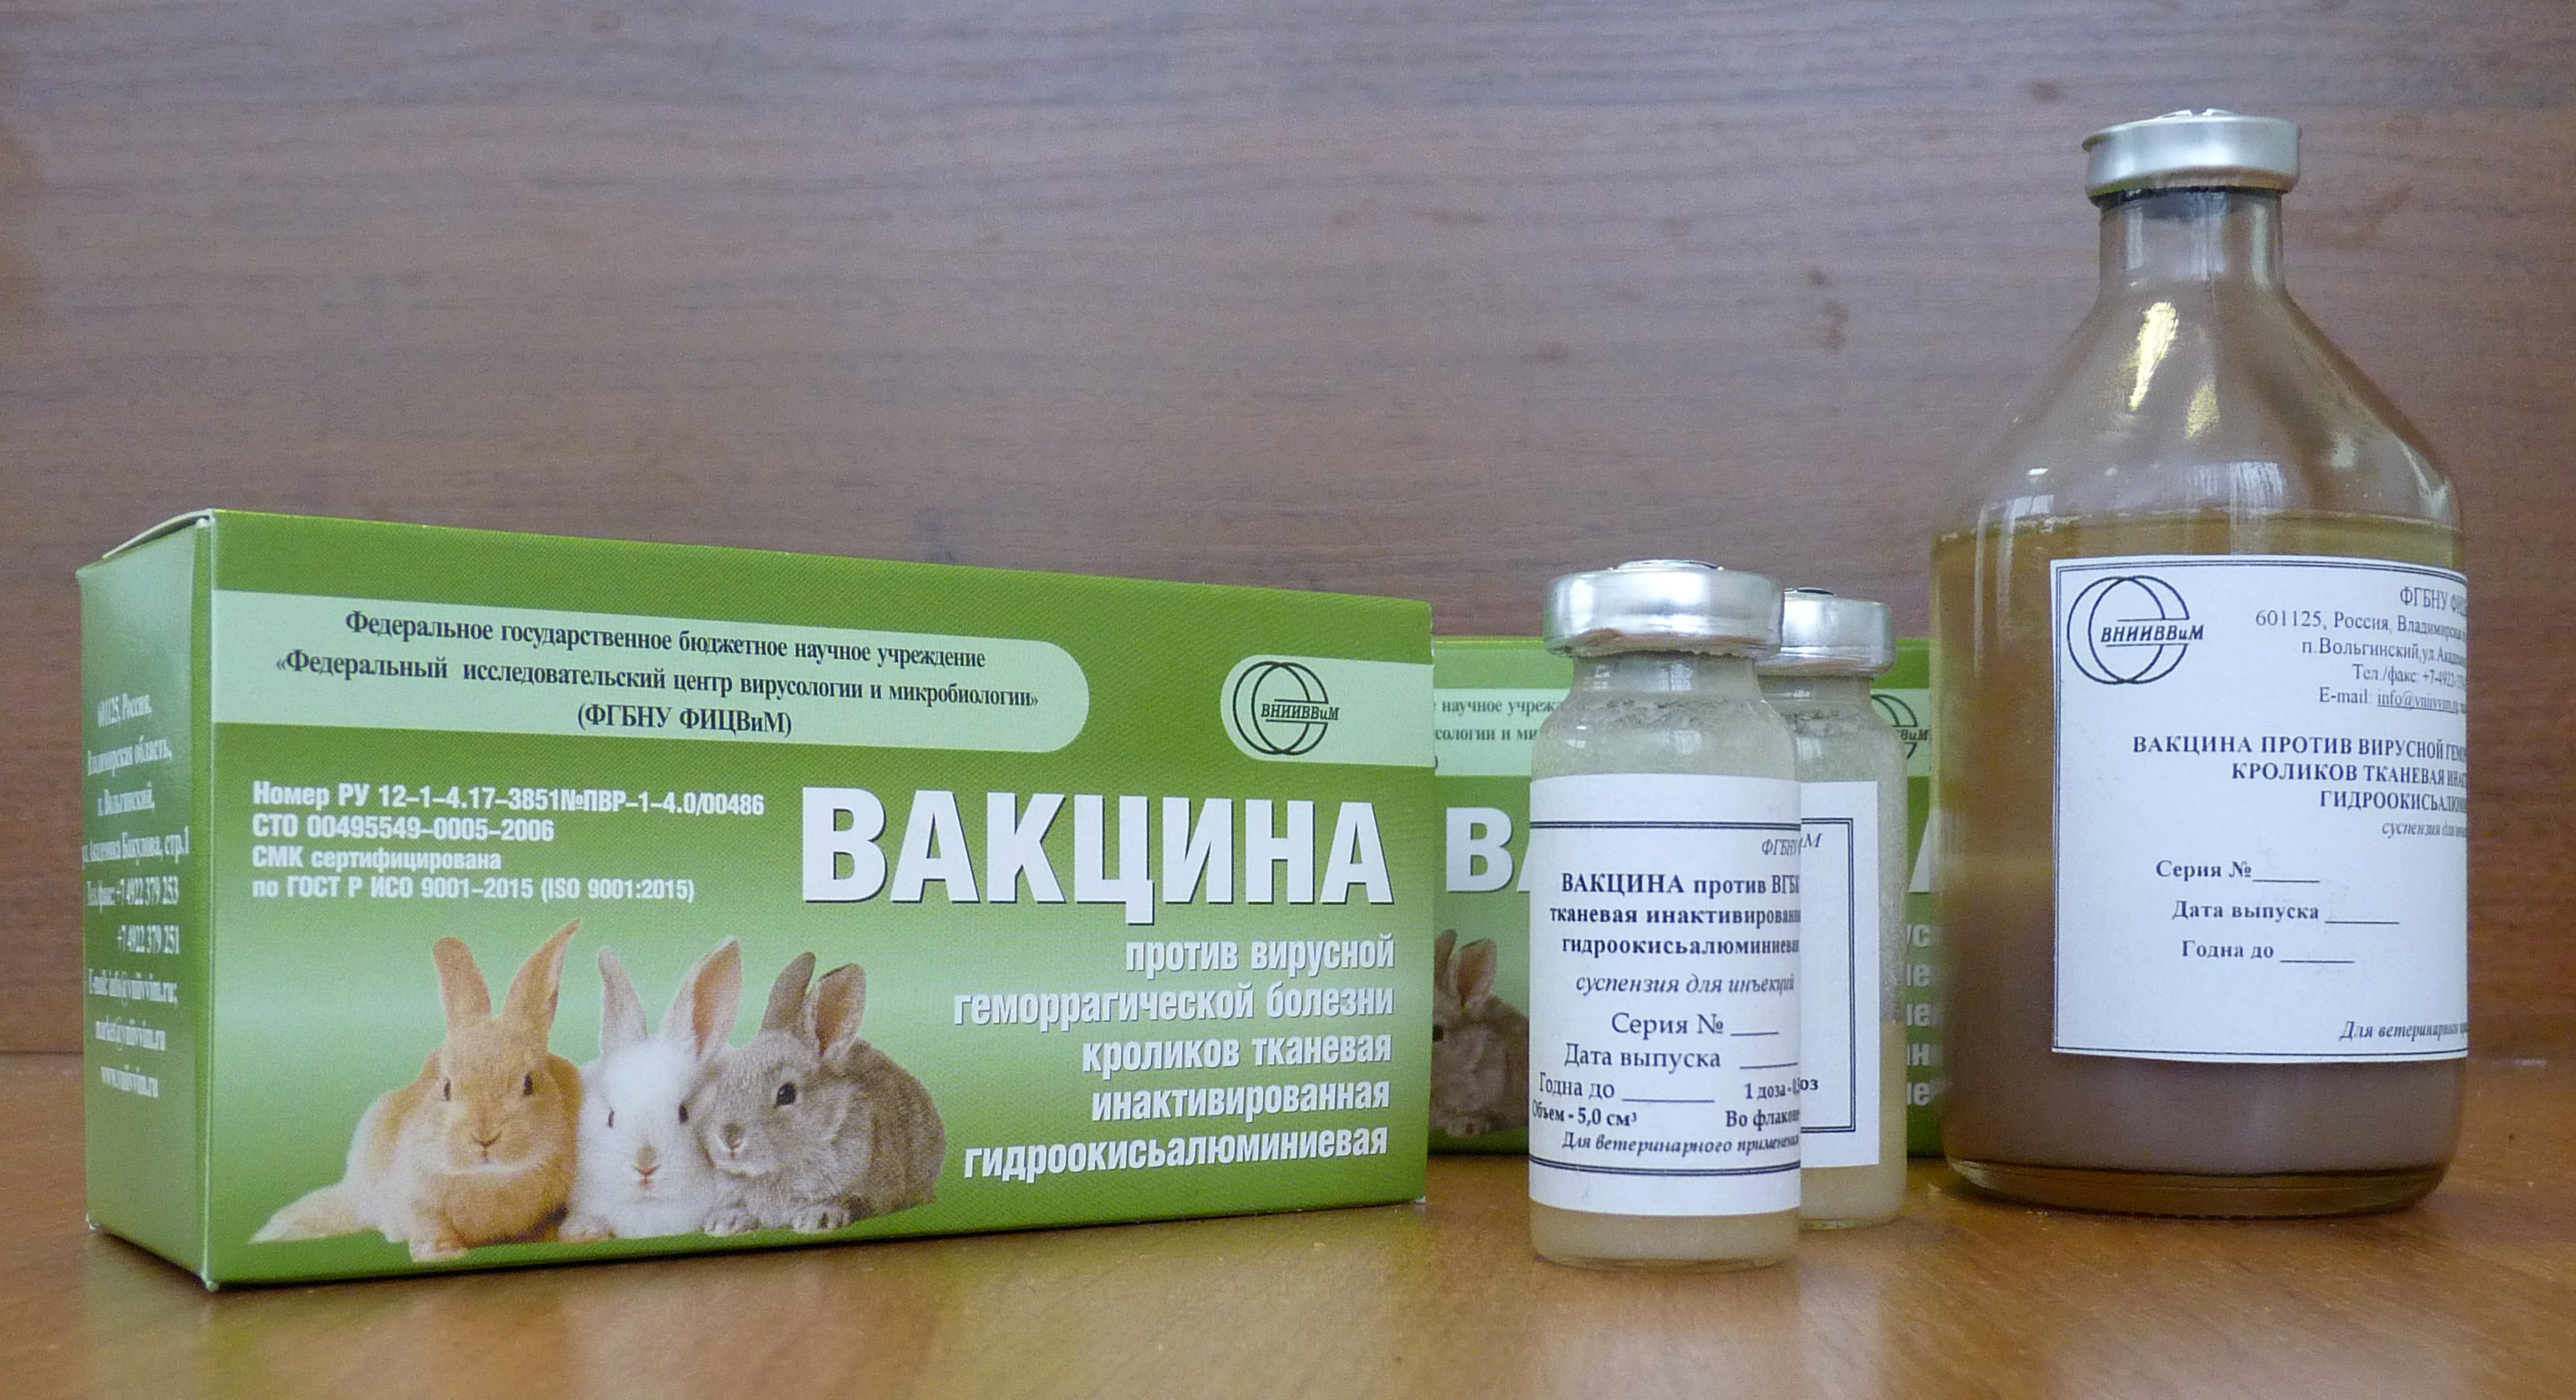 Ассоциированная вакцина для кроликов ВГБК